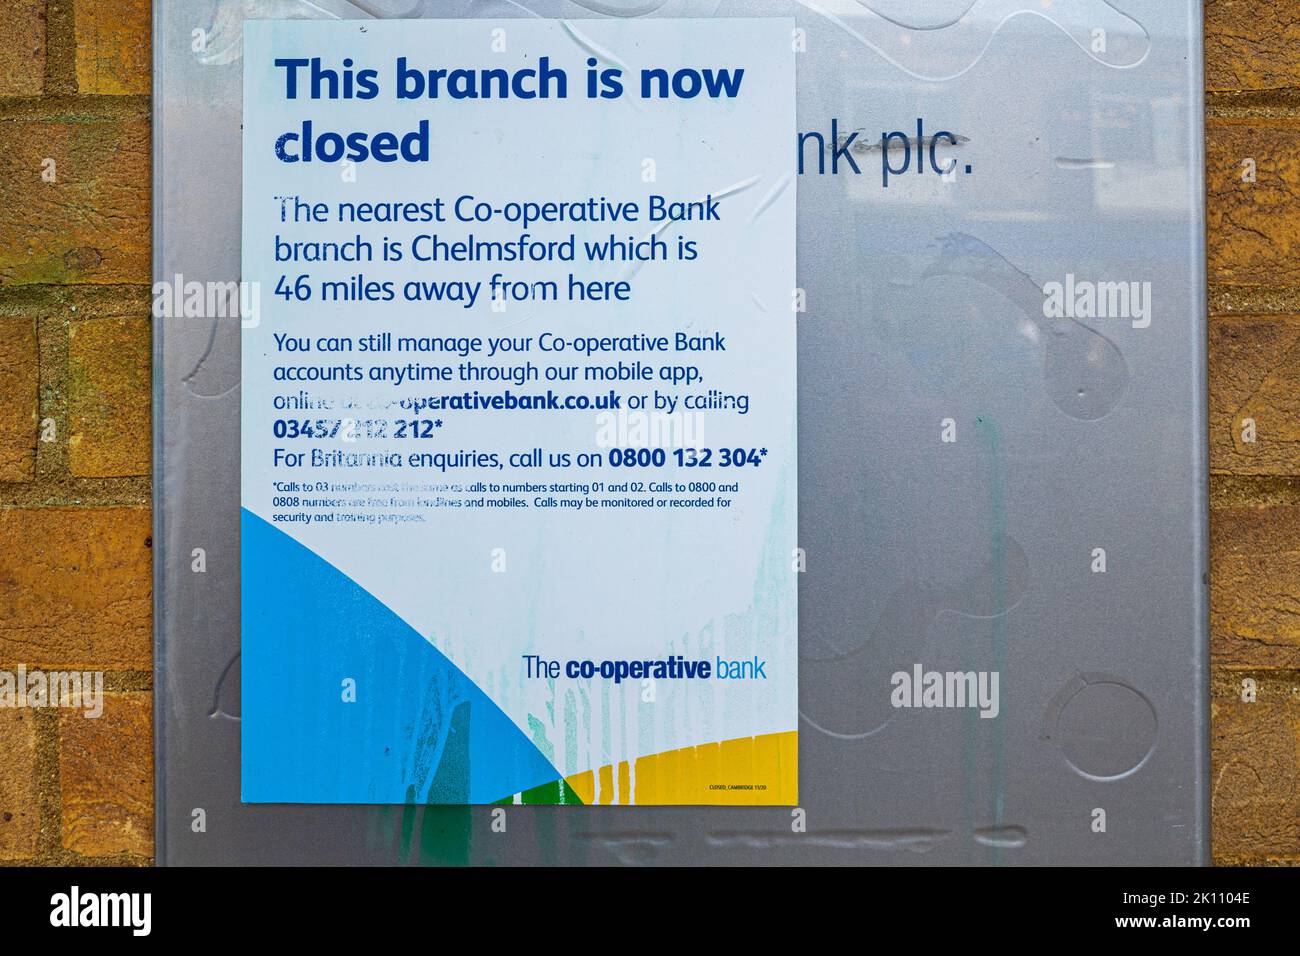 Bank Branch Closure Cooperative Bank Cambridge – Benachrichtigung der Kunden, dass die nächste Filiale 46 Meilen entfernt ist. Mitteilung über die Schließung von Genossenschaftsbanken. Stockfoto